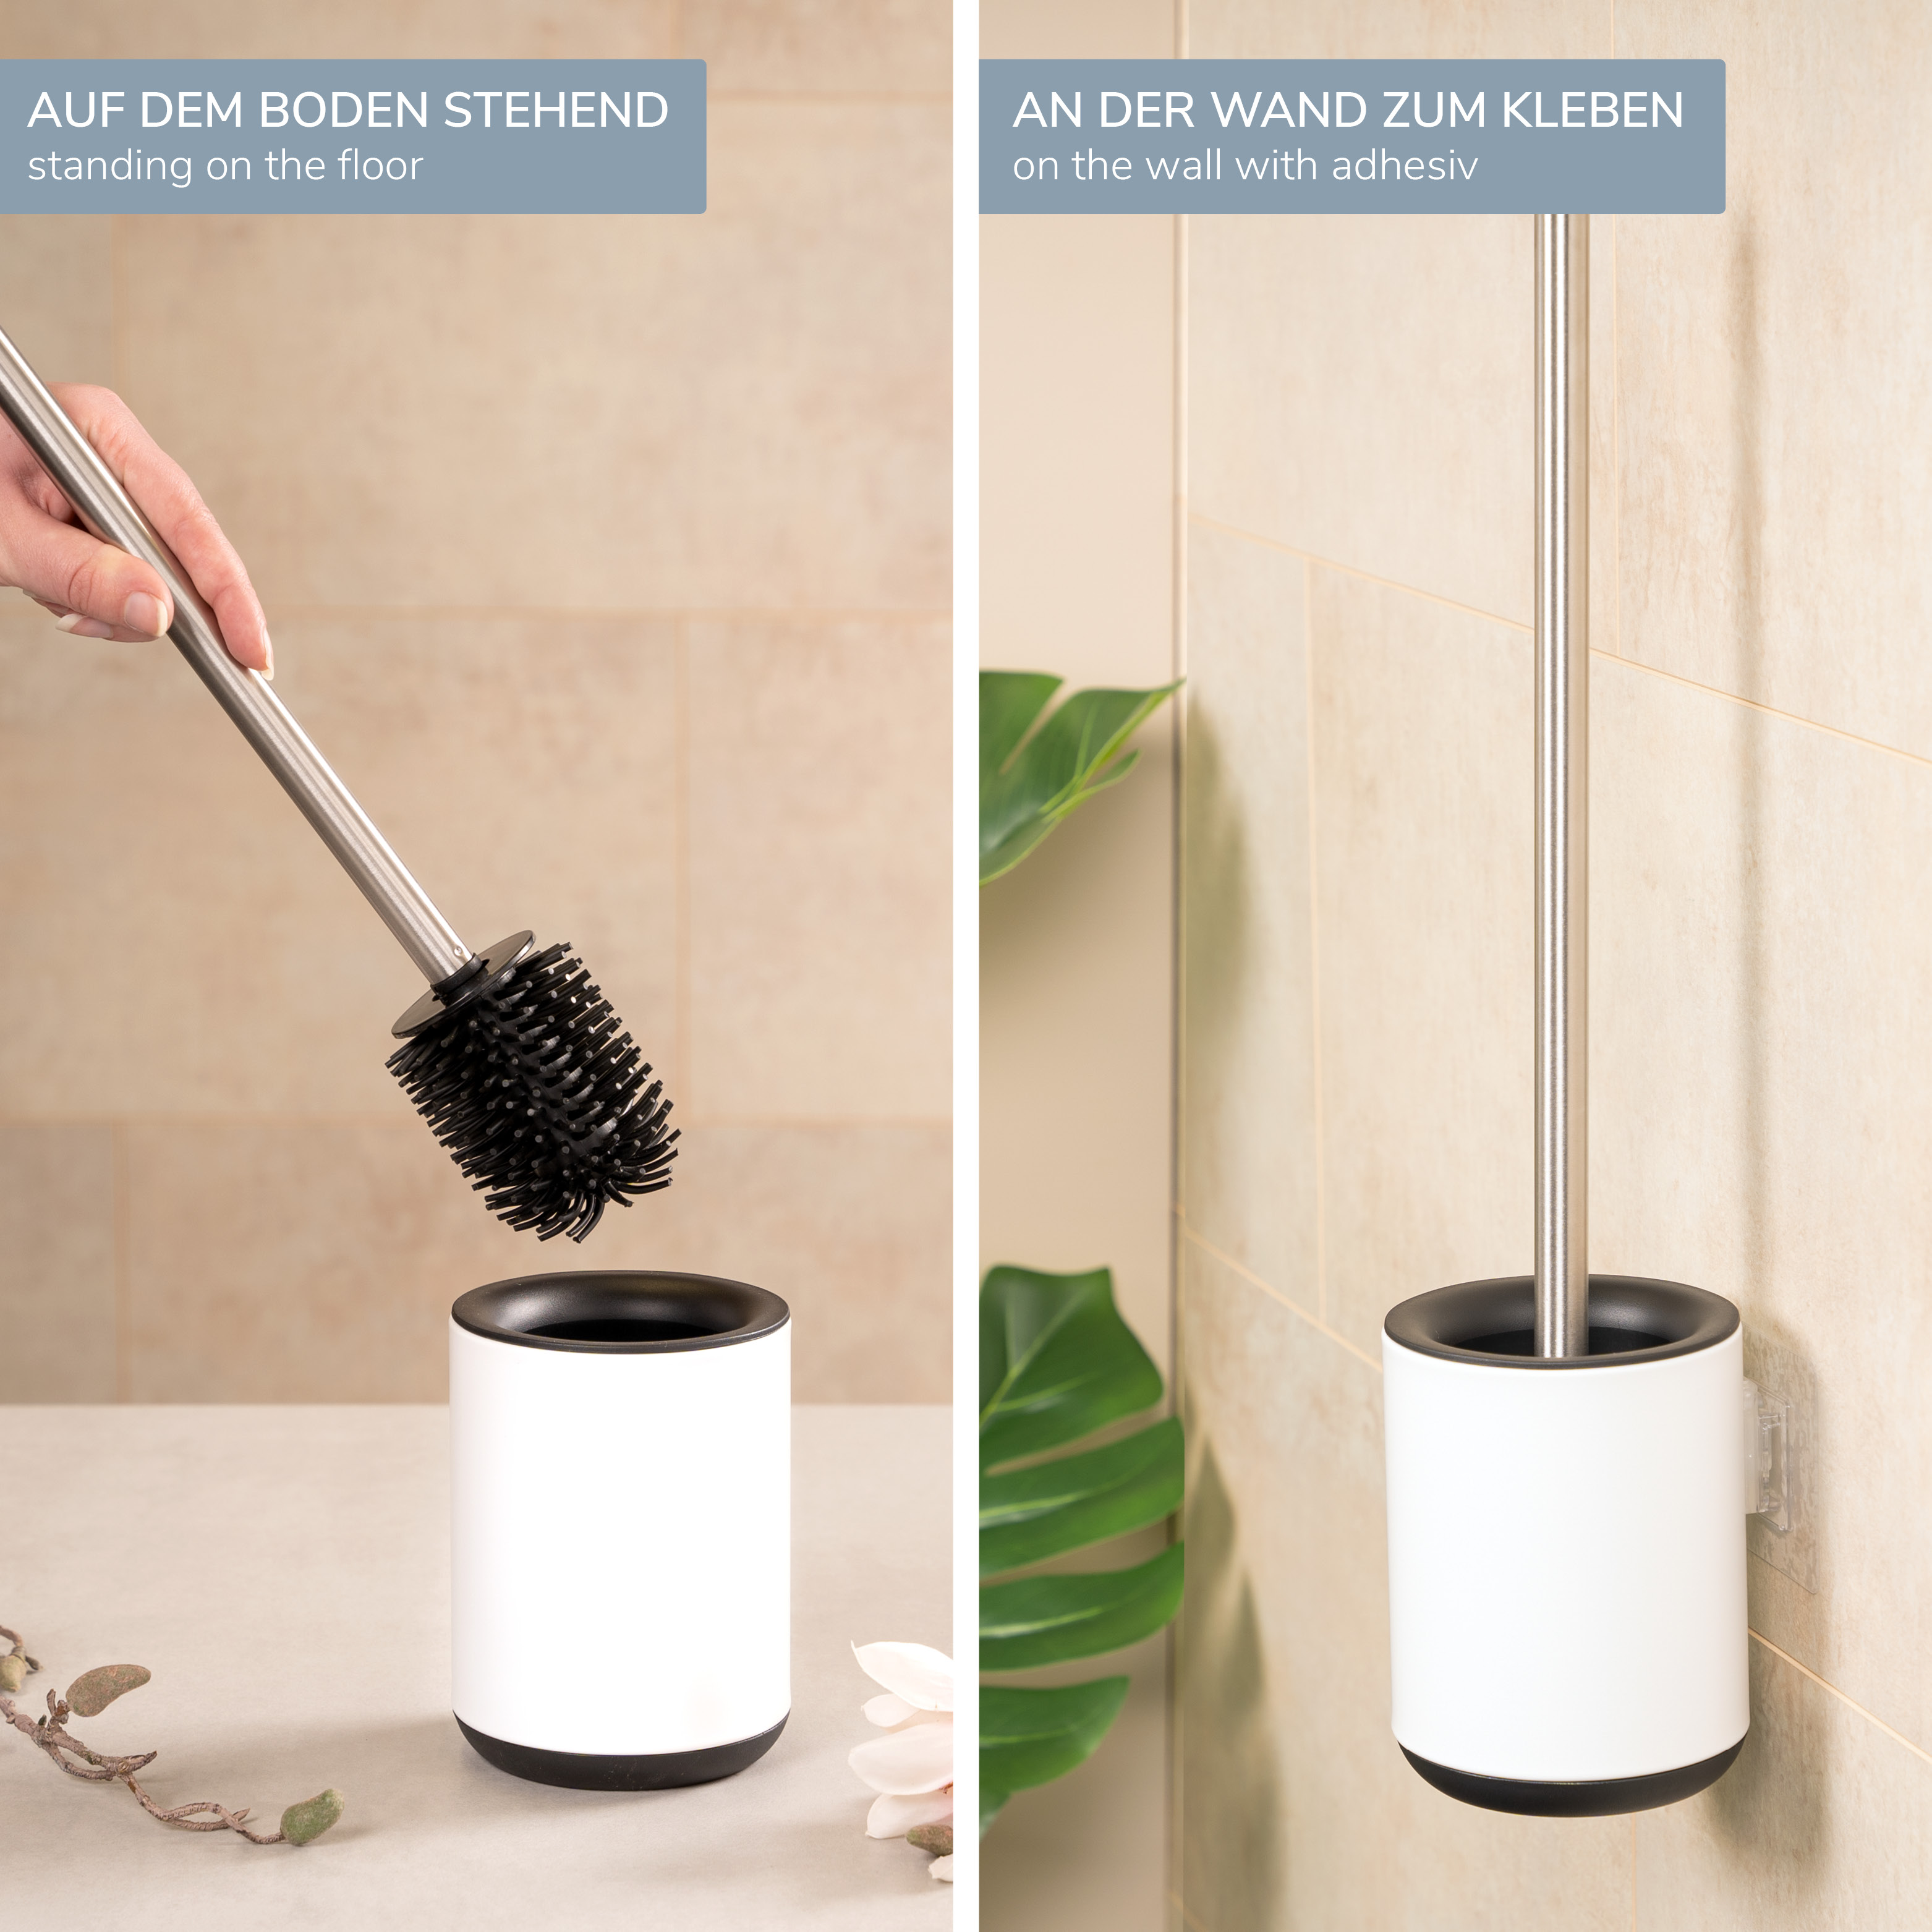 WC-Garnitur BARBENA, weiß, mit flexibler 3in1 Bürste aus elastischem TPR-Material mit Wandhalterung // WC-Bürste Edelstahlgriff 